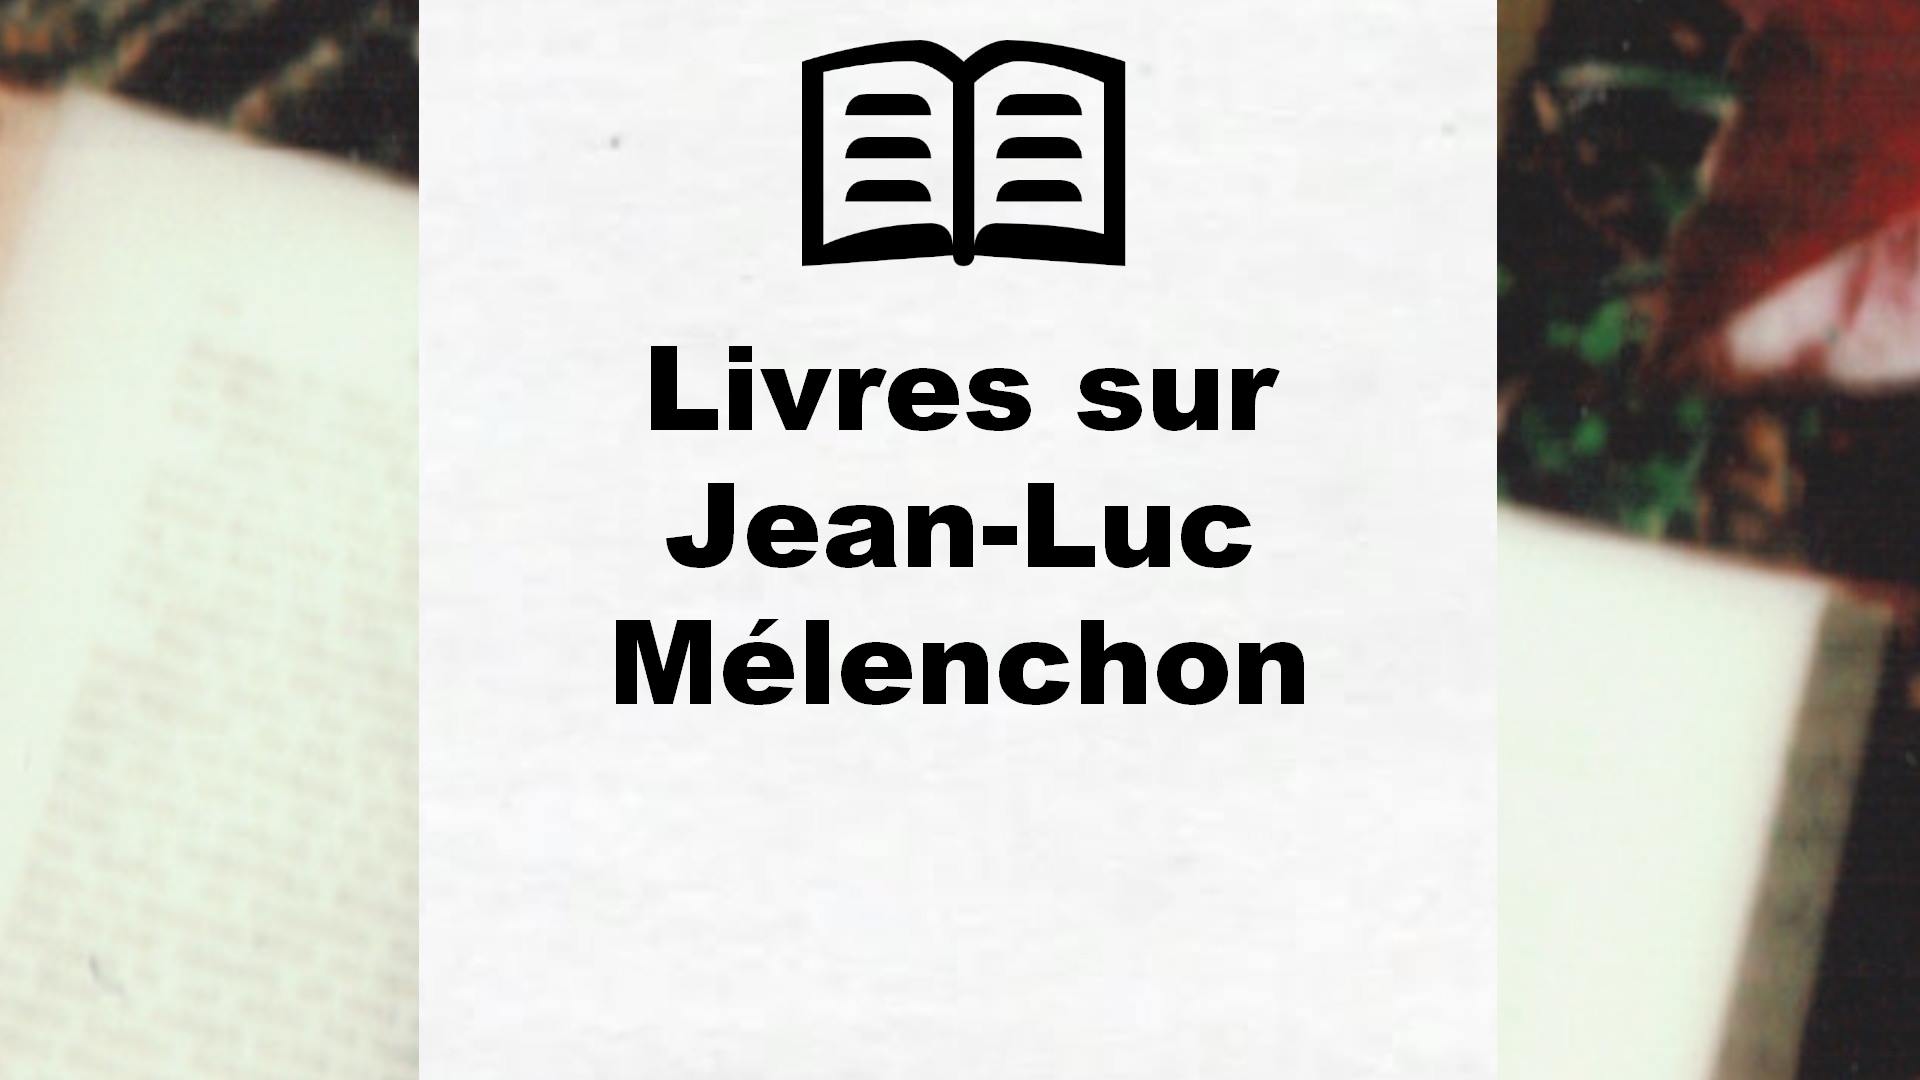 Livres sur Jean-Luc Mélenchon